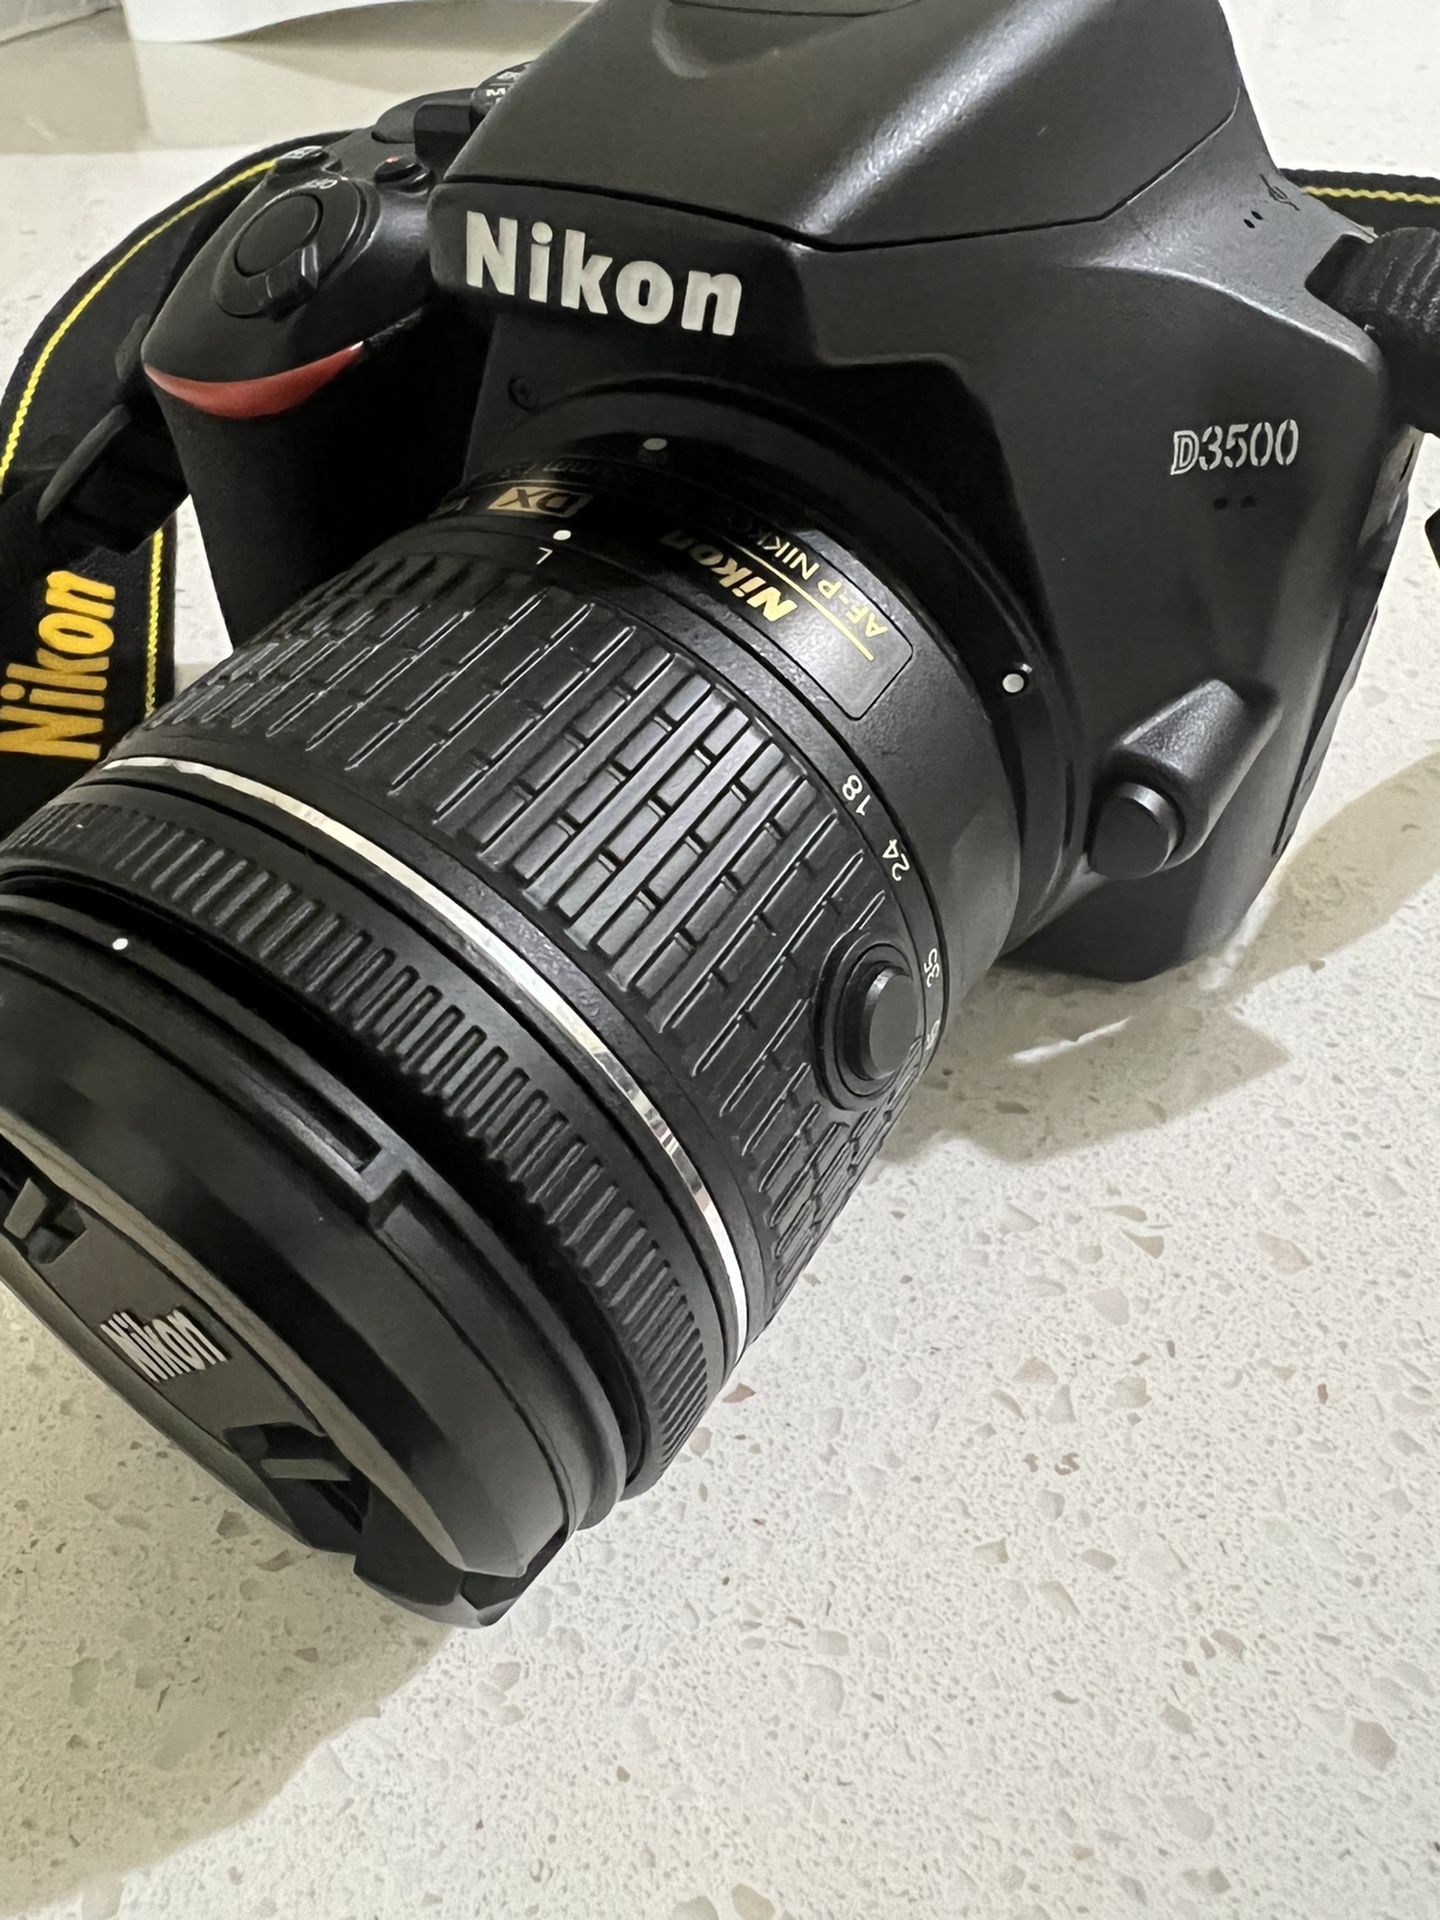 Nikon D3500 DSLR Camera W/ 18-55mm Kit Lens